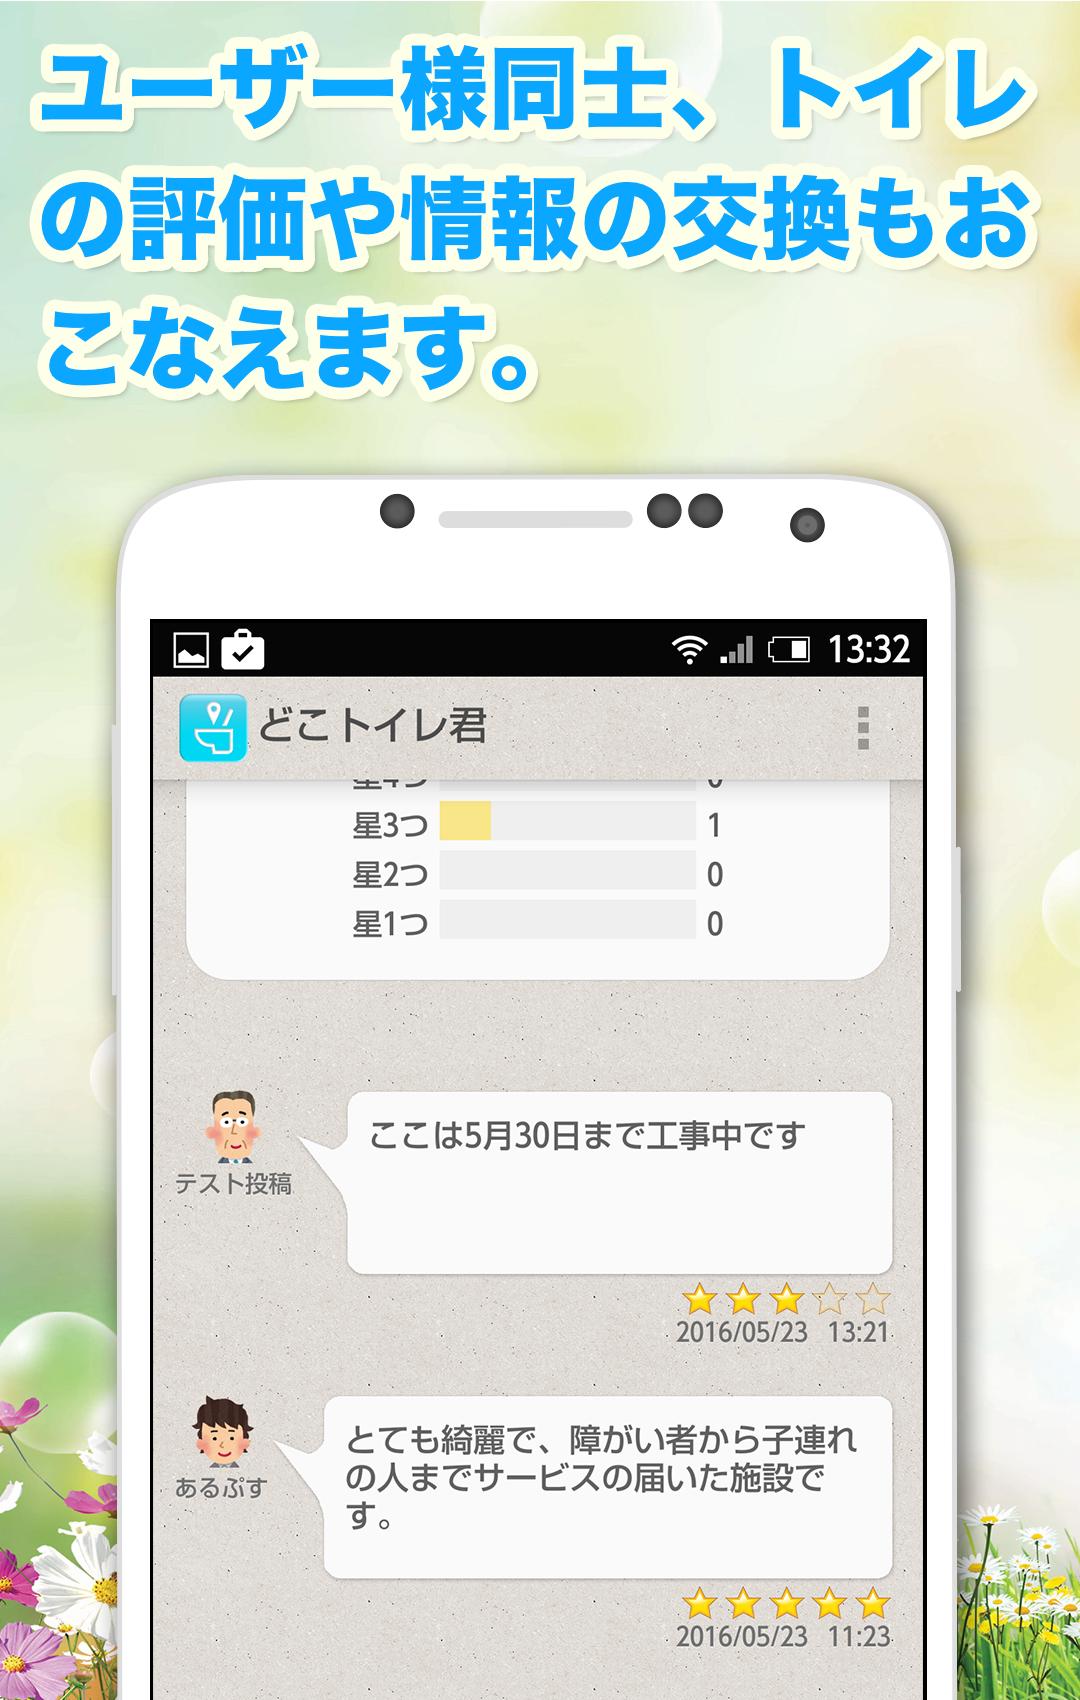 トイレ情報共有マップくん for Android APK Download